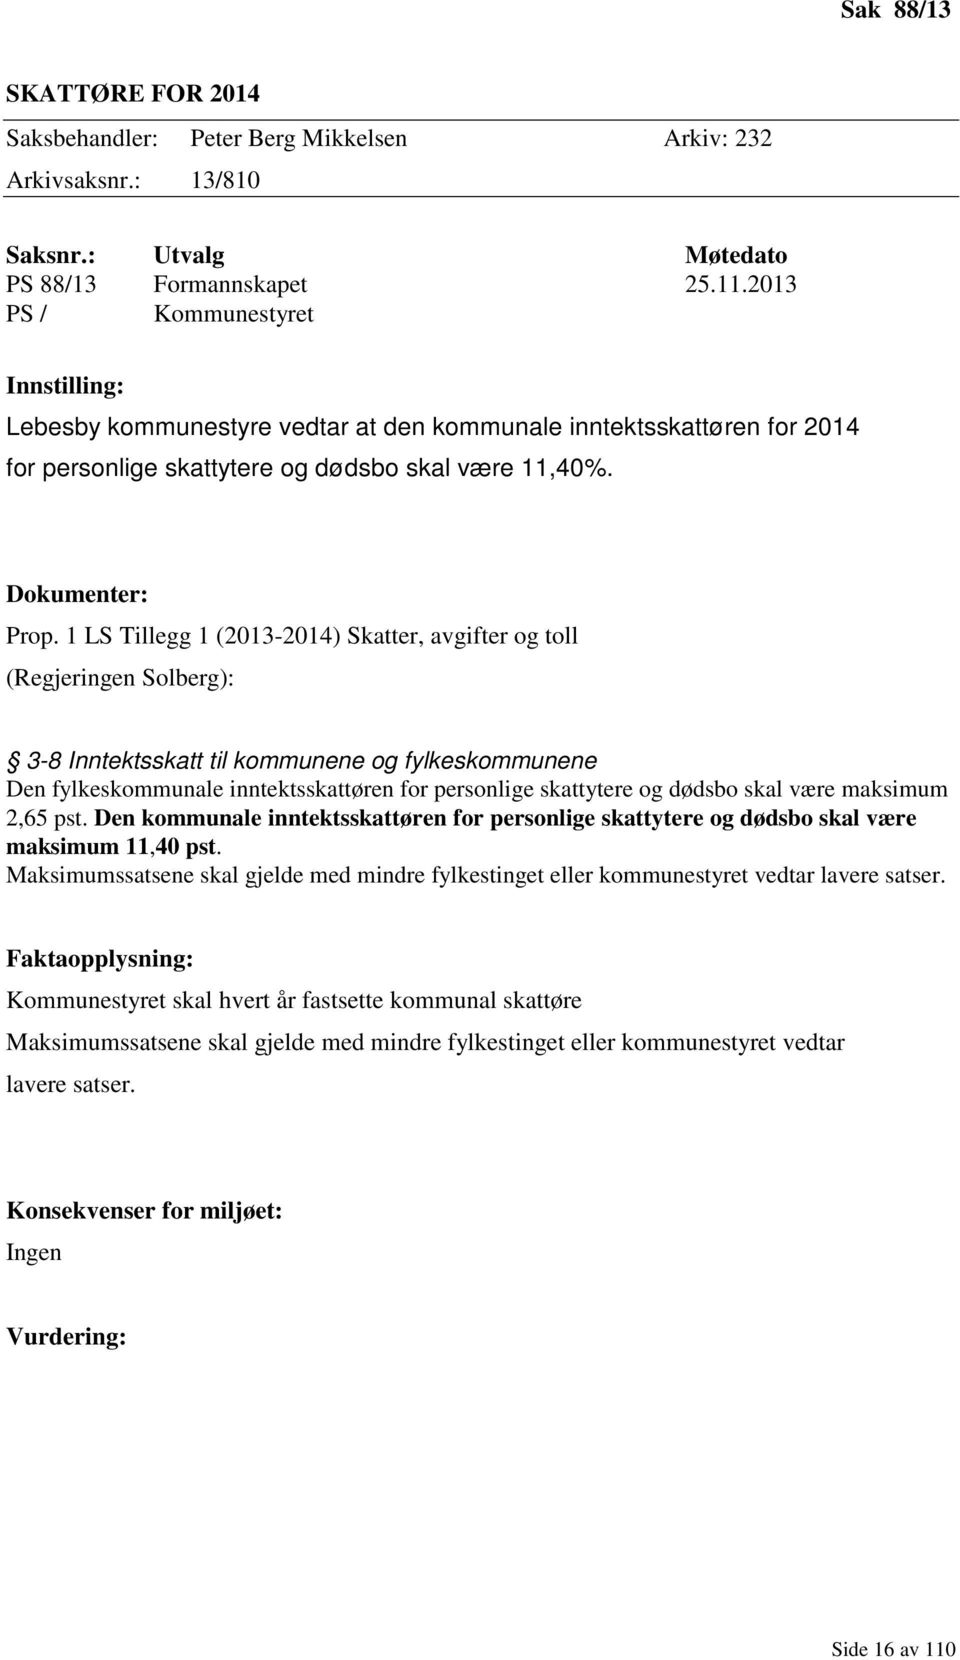 1 LS Tillegg 1 (2013-2014) Skatter, avgifter og toll (Regjeringen Solberg): 3-8 Inntektsskatt til kommunene og fylkeskommunene Den fylkeskommunale inntektsskattøren for personlige skattytere og